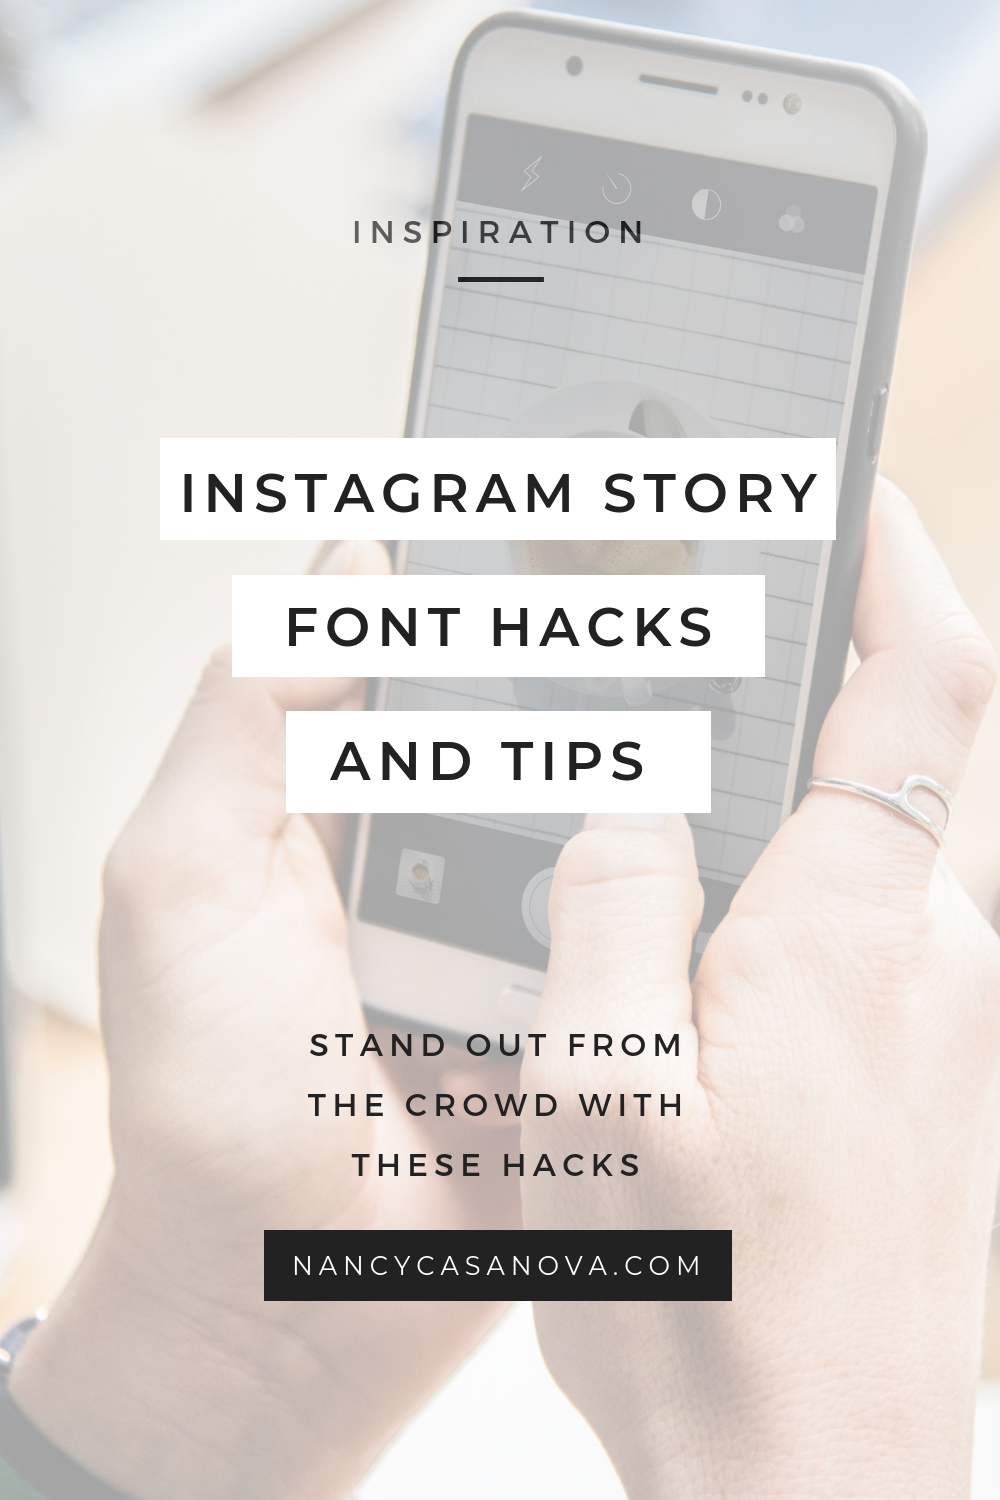 Các mẹo và thủ thuật font chữ trên Instagram Story (iPhone) - Làm thế nào để thu hút người theo dõi với những mẹo và thủ thuật font chữ trên Instagram Story? Hãy vào xem hình ảnh này để tìm hiểu cách tạo ra những Instagram Story thật sự độc đáo với font chữ mới mẻ trên iPhone.